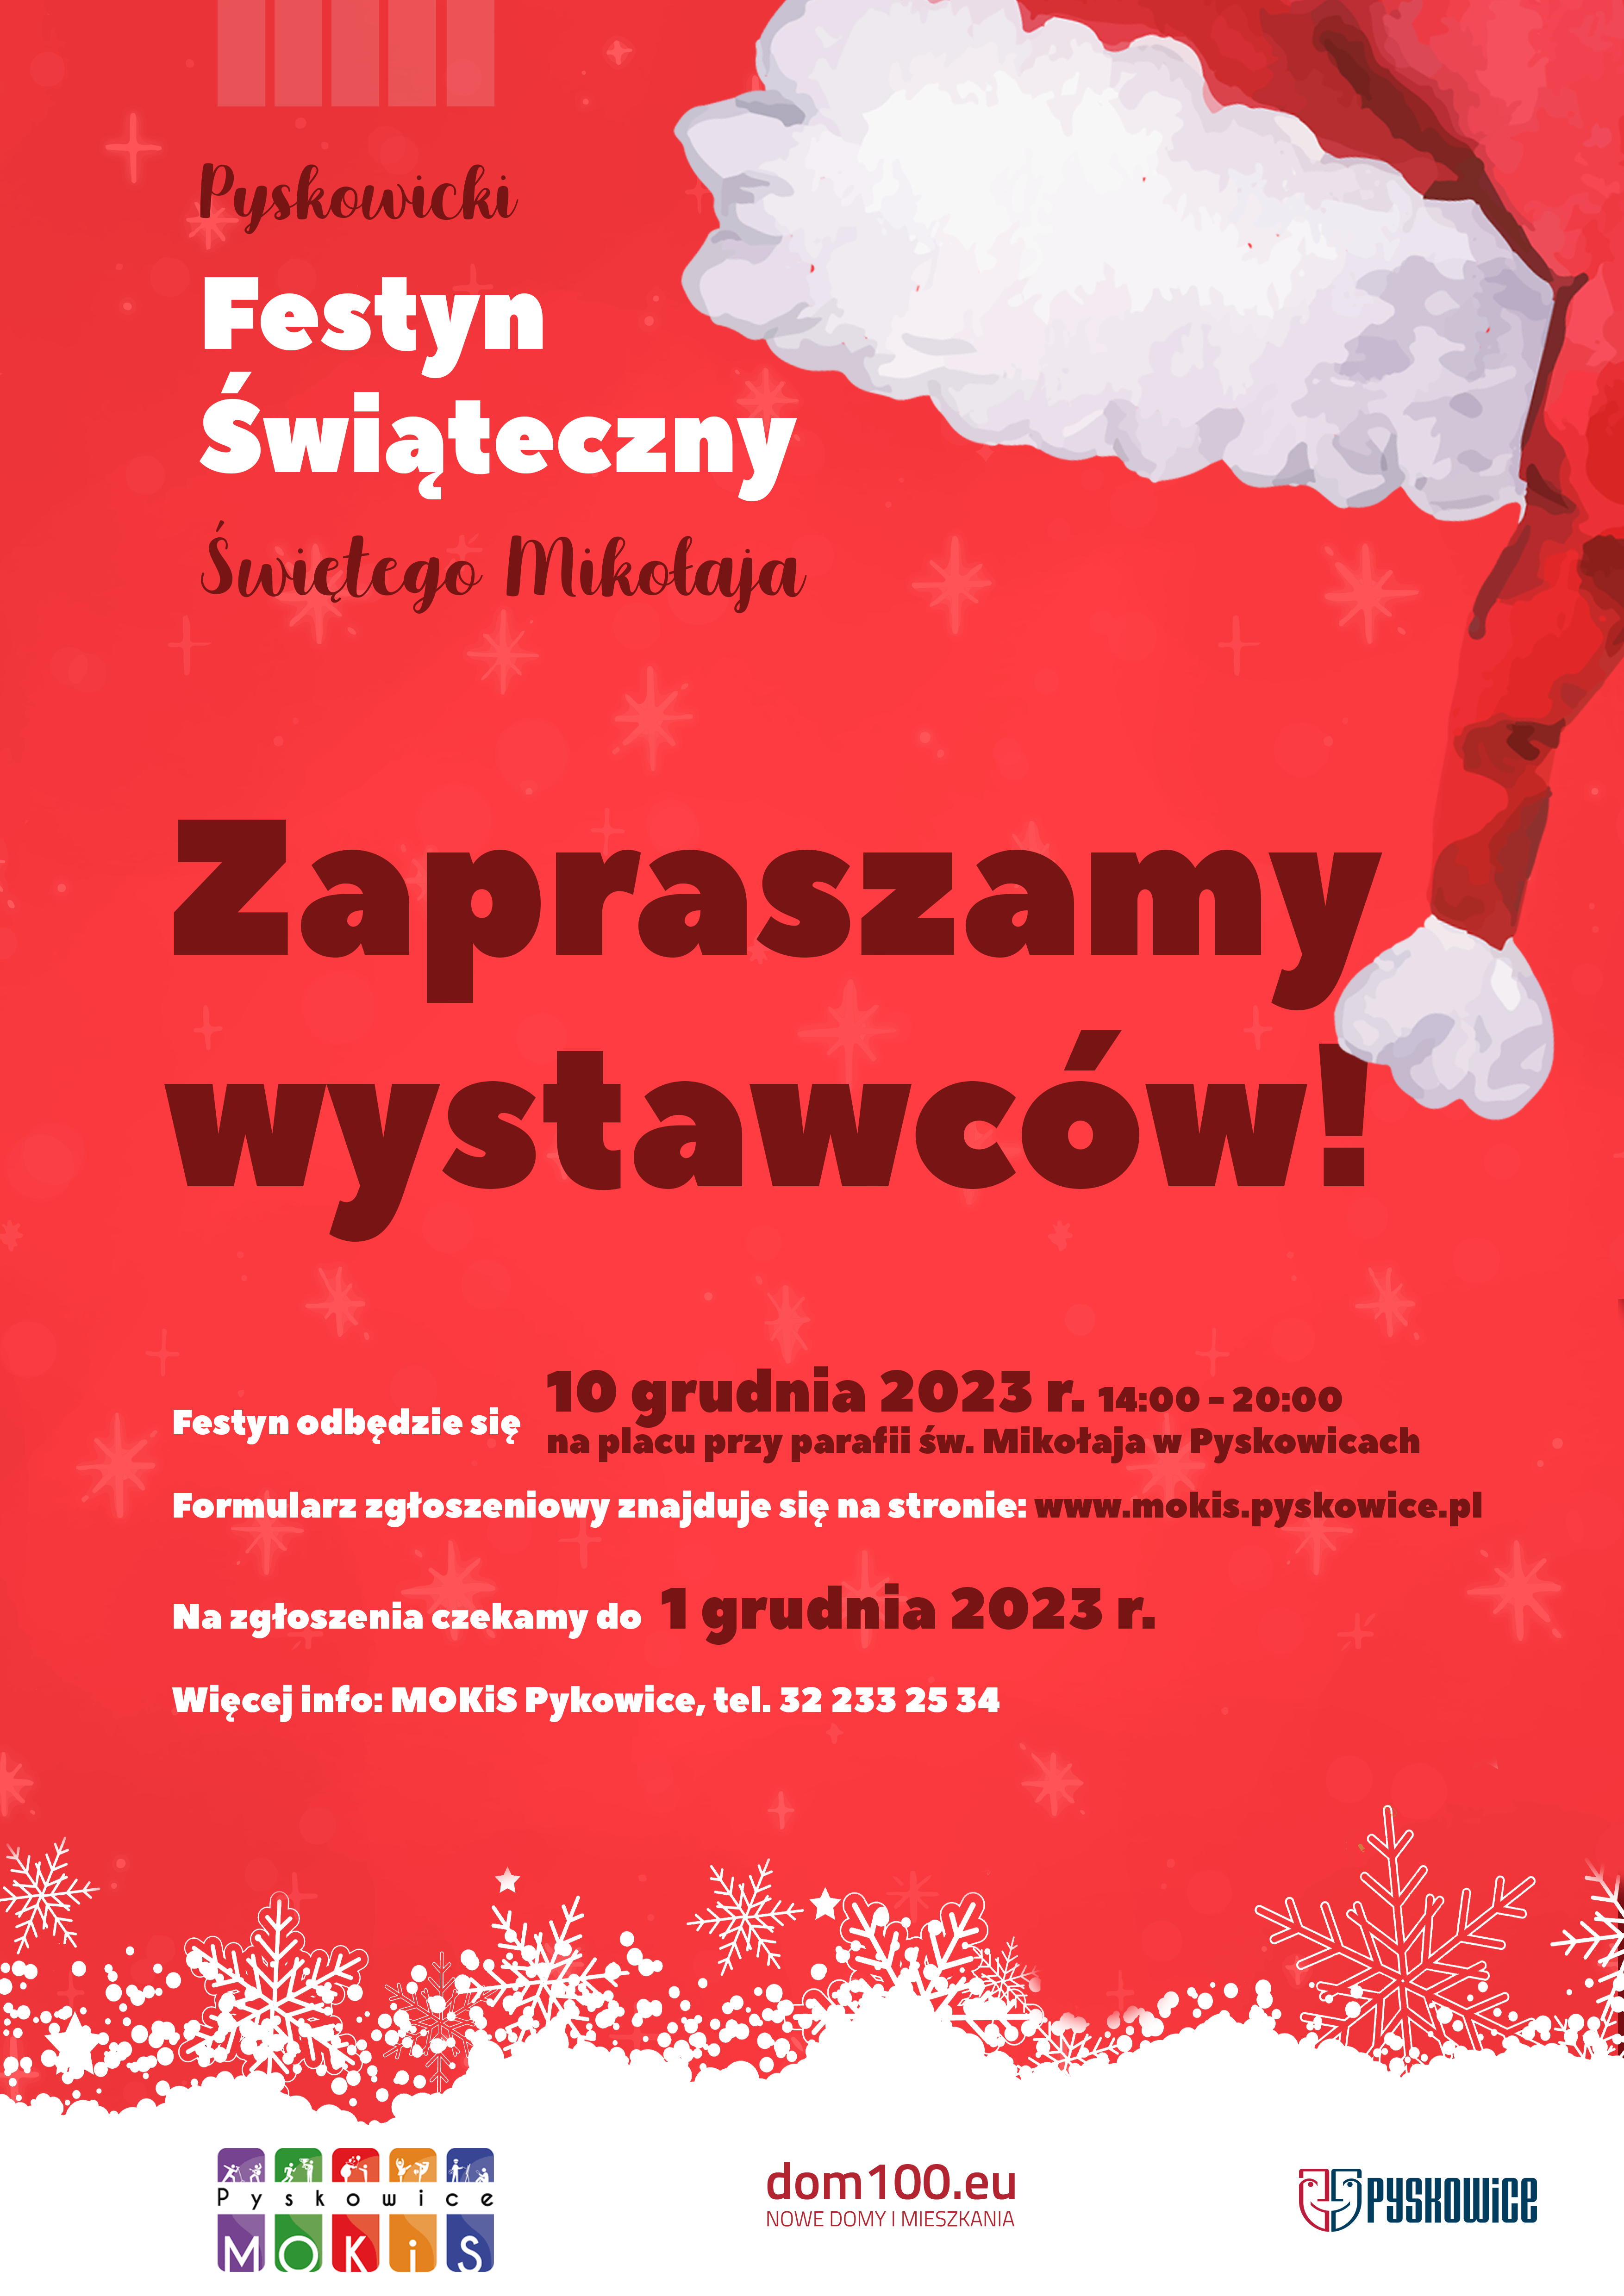 Plakat z zaproszeniem dla wystawców w czasie festynu Świętego Mikołaja